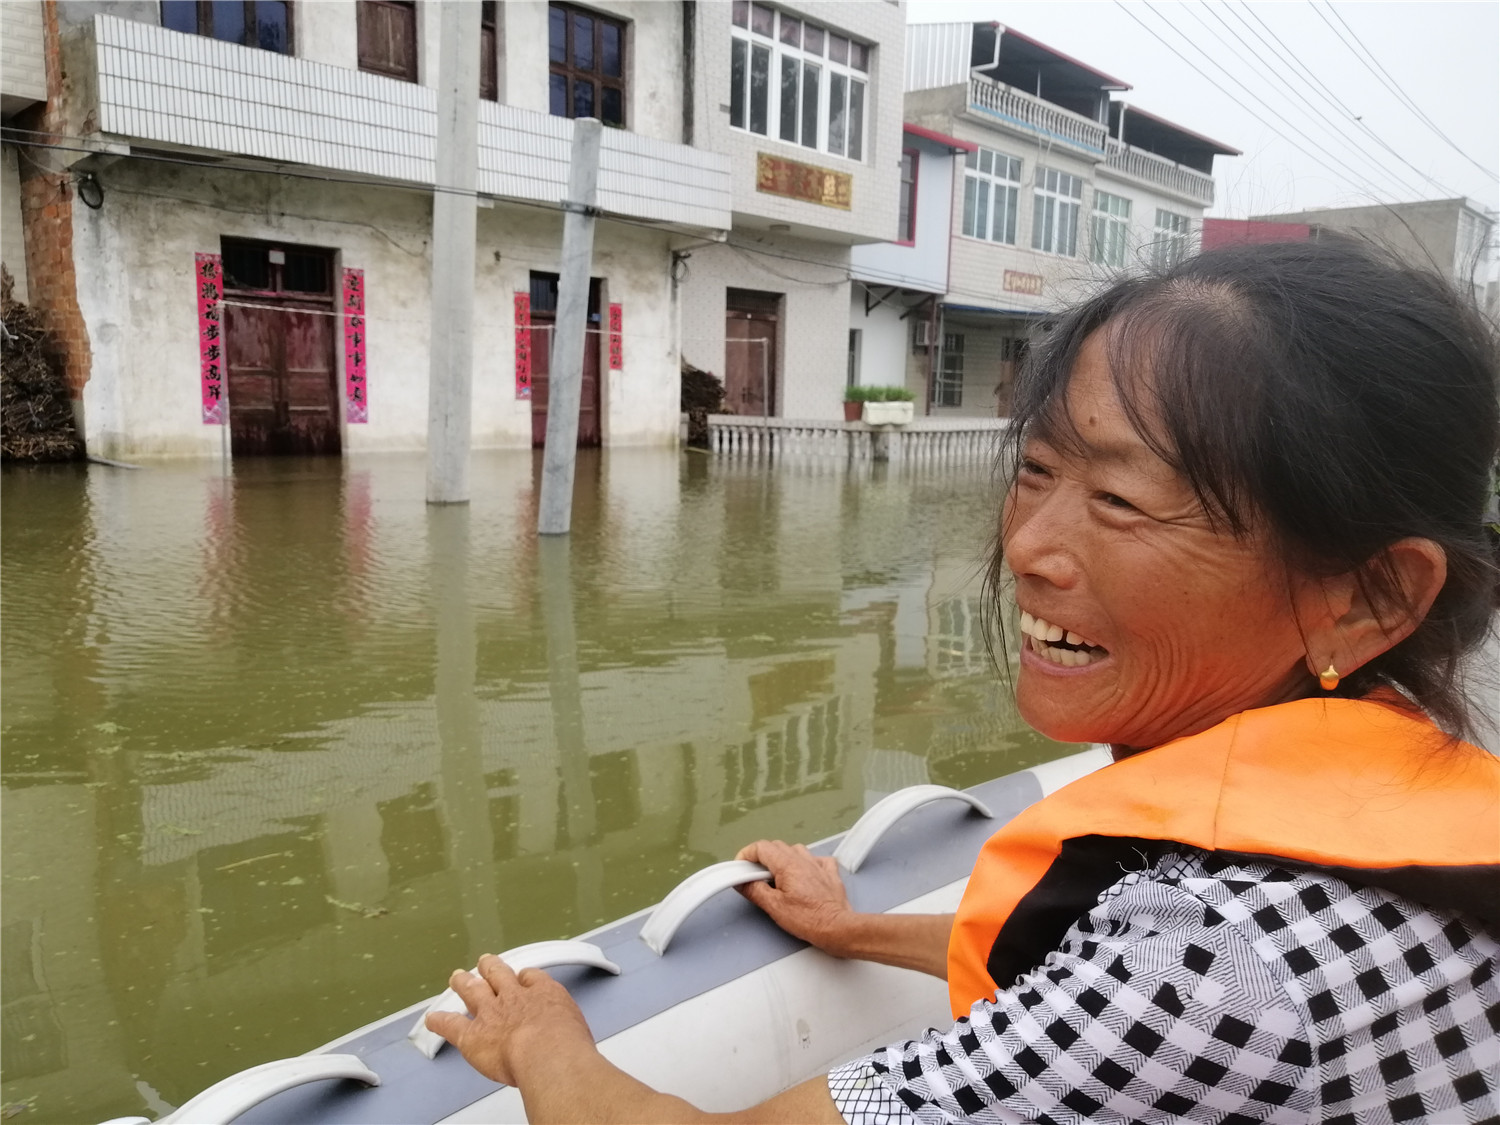 安徽宿松:民间救援队在抗洪中发挥重要作用